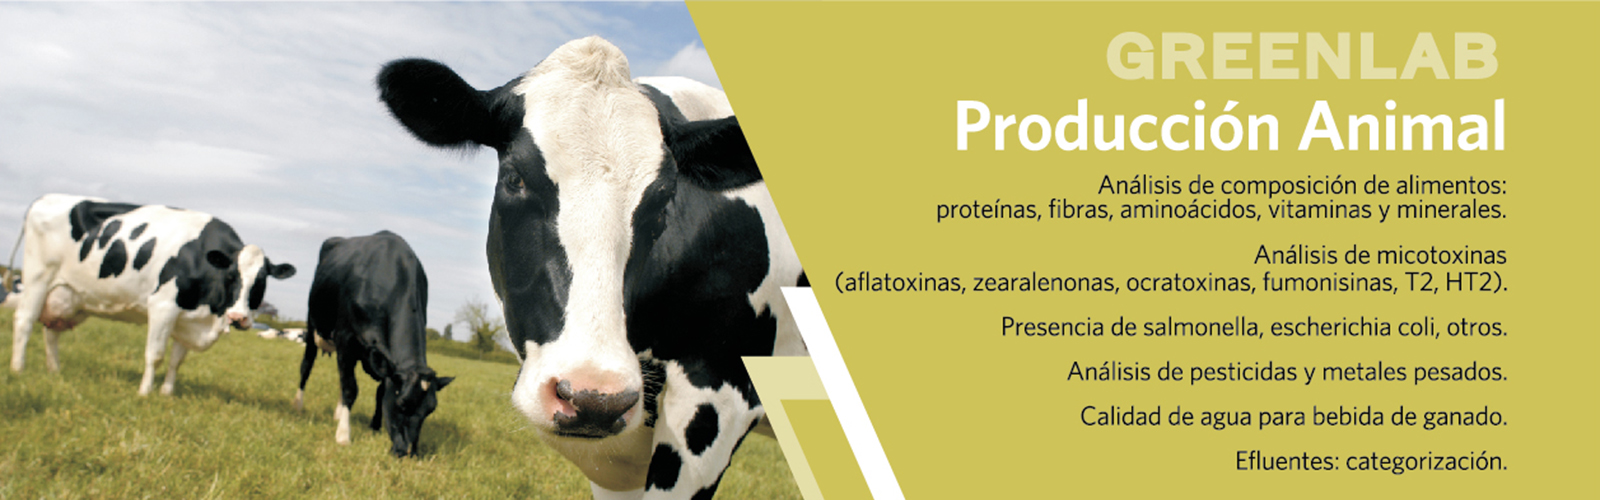 Composicion de alimentos, micotoxinas, bacterias, pesticidas y metales pesados, calidad de agua para ganado, categorizacion de efluentes